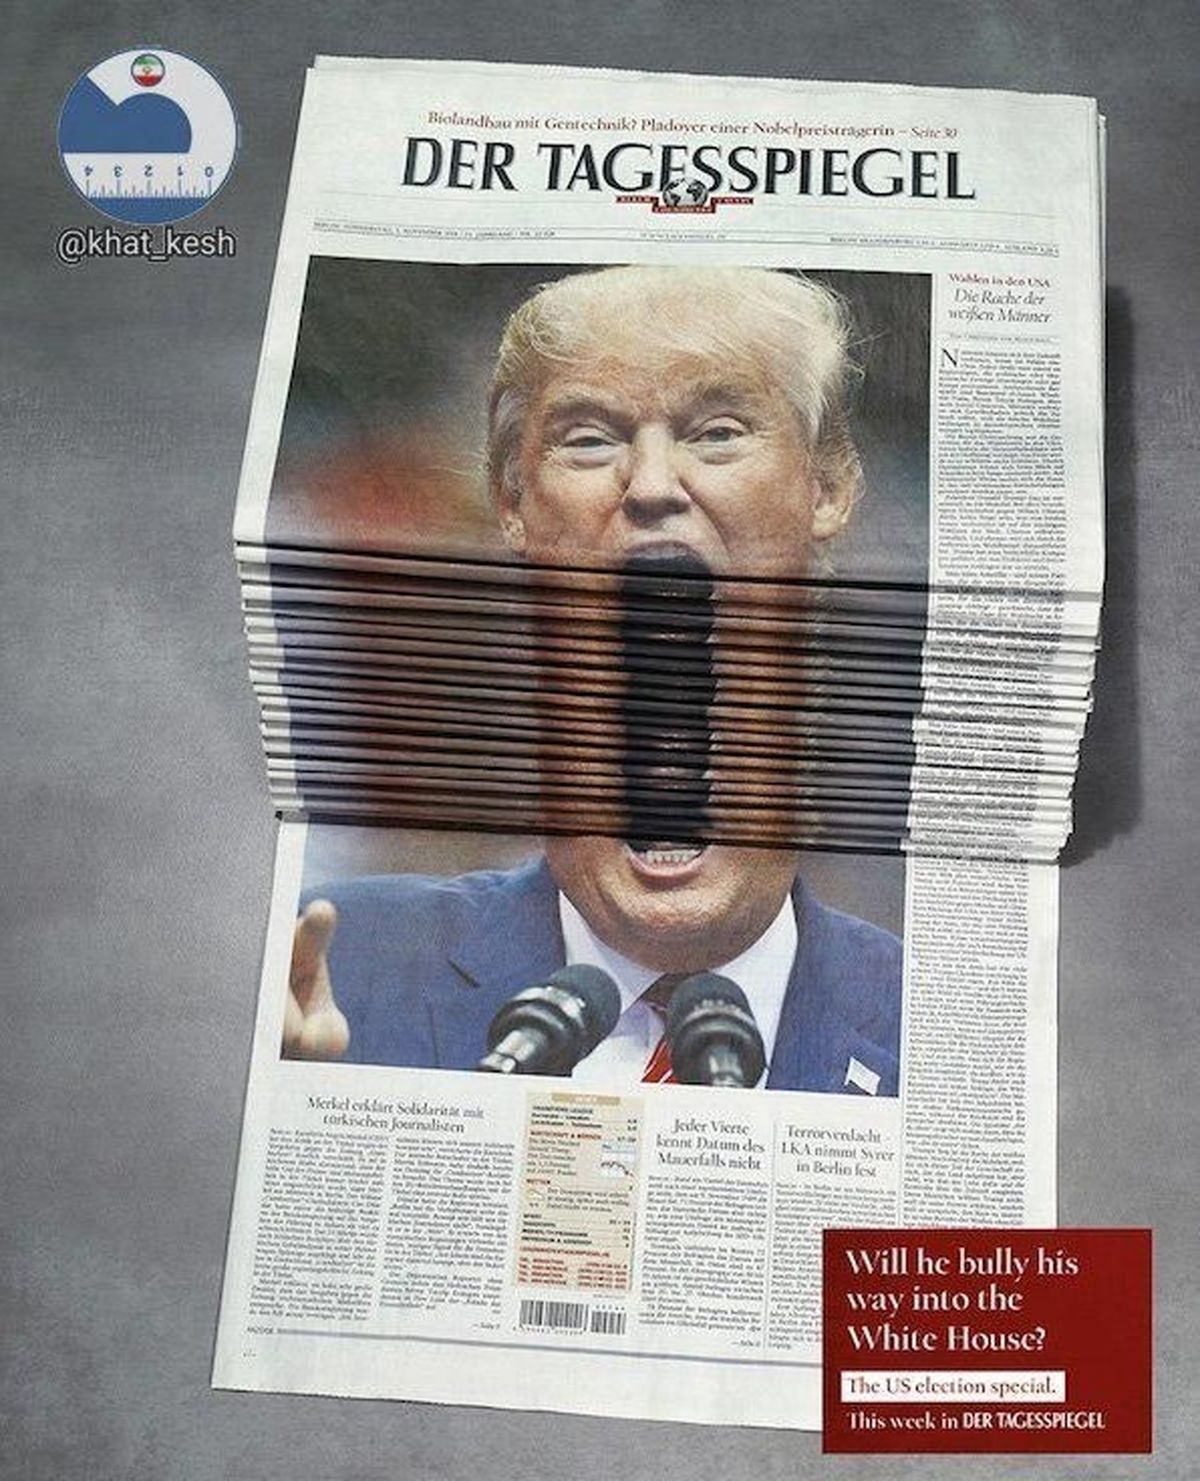 ابتکار جالب یک روزنامه برای «بستن دهان ترامپ»